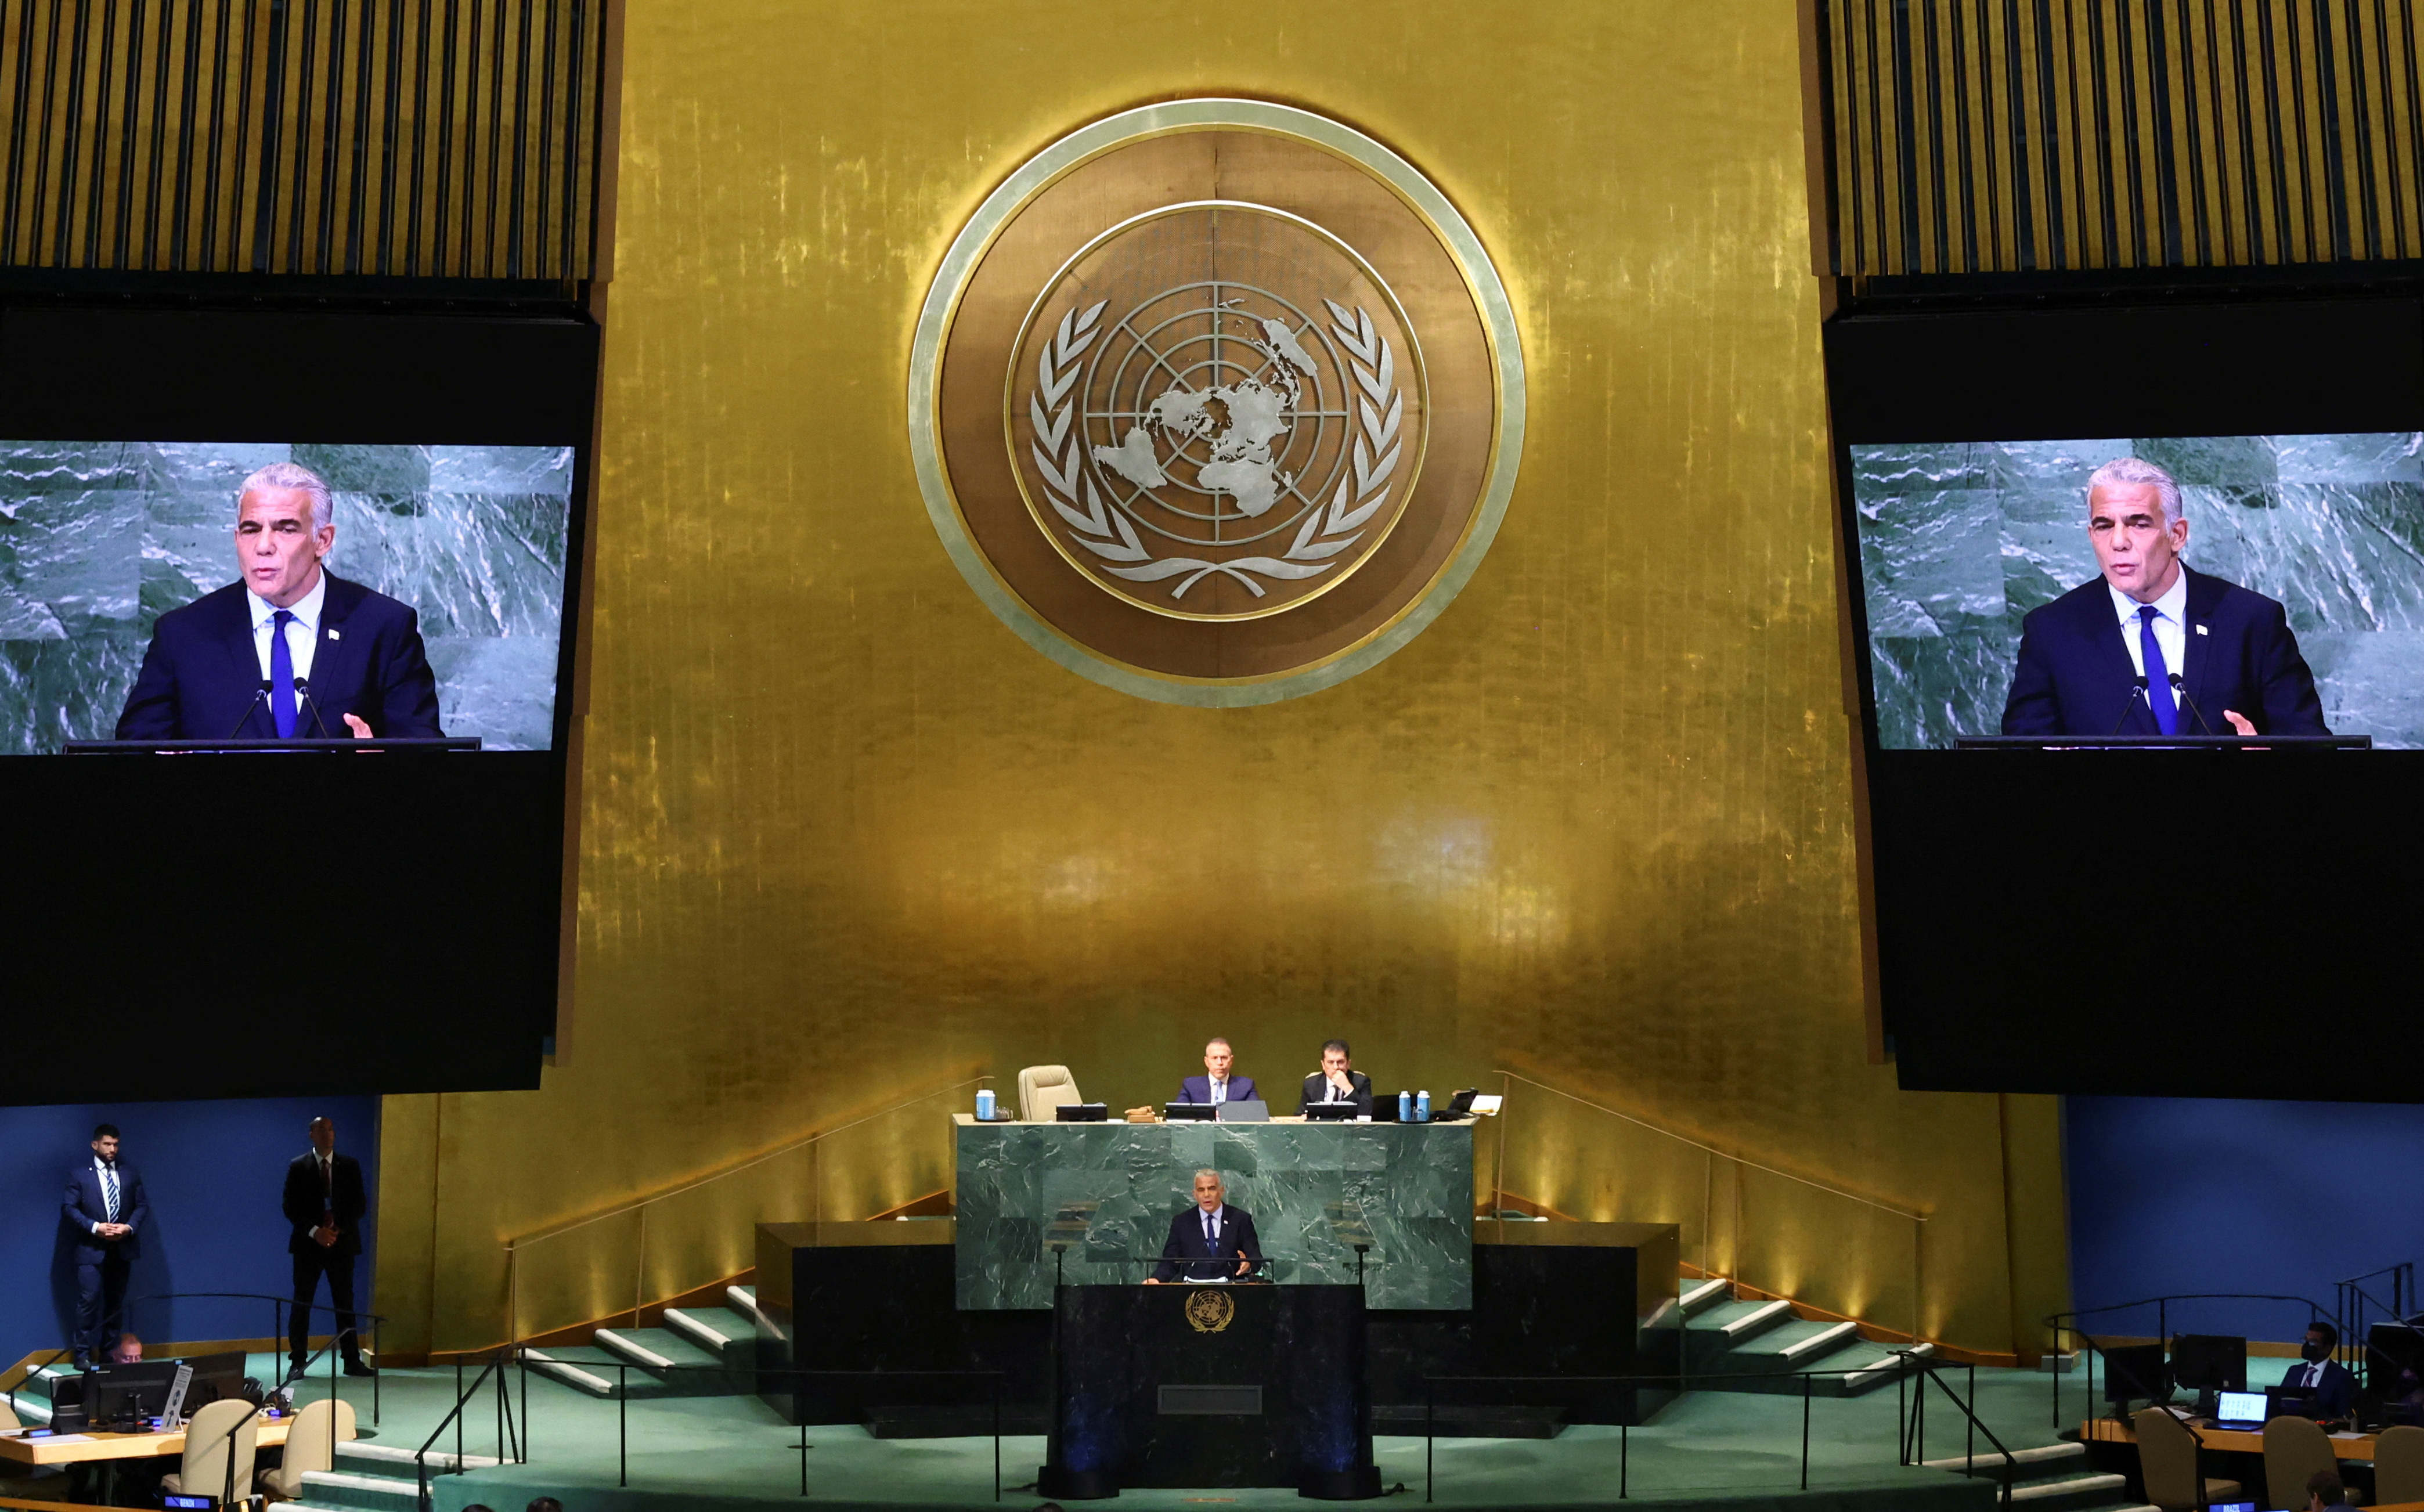 El primer ministro de Israel, Yair Lapid, se dirige al 77° período de sesiones de la Asamblea General de las Naciones Unidas en la sede de las Naciones Unidas en la ciudad de Nueva York, EEUU, el 22 de septiembre de 2022 (REUTERS/Mike Segar)